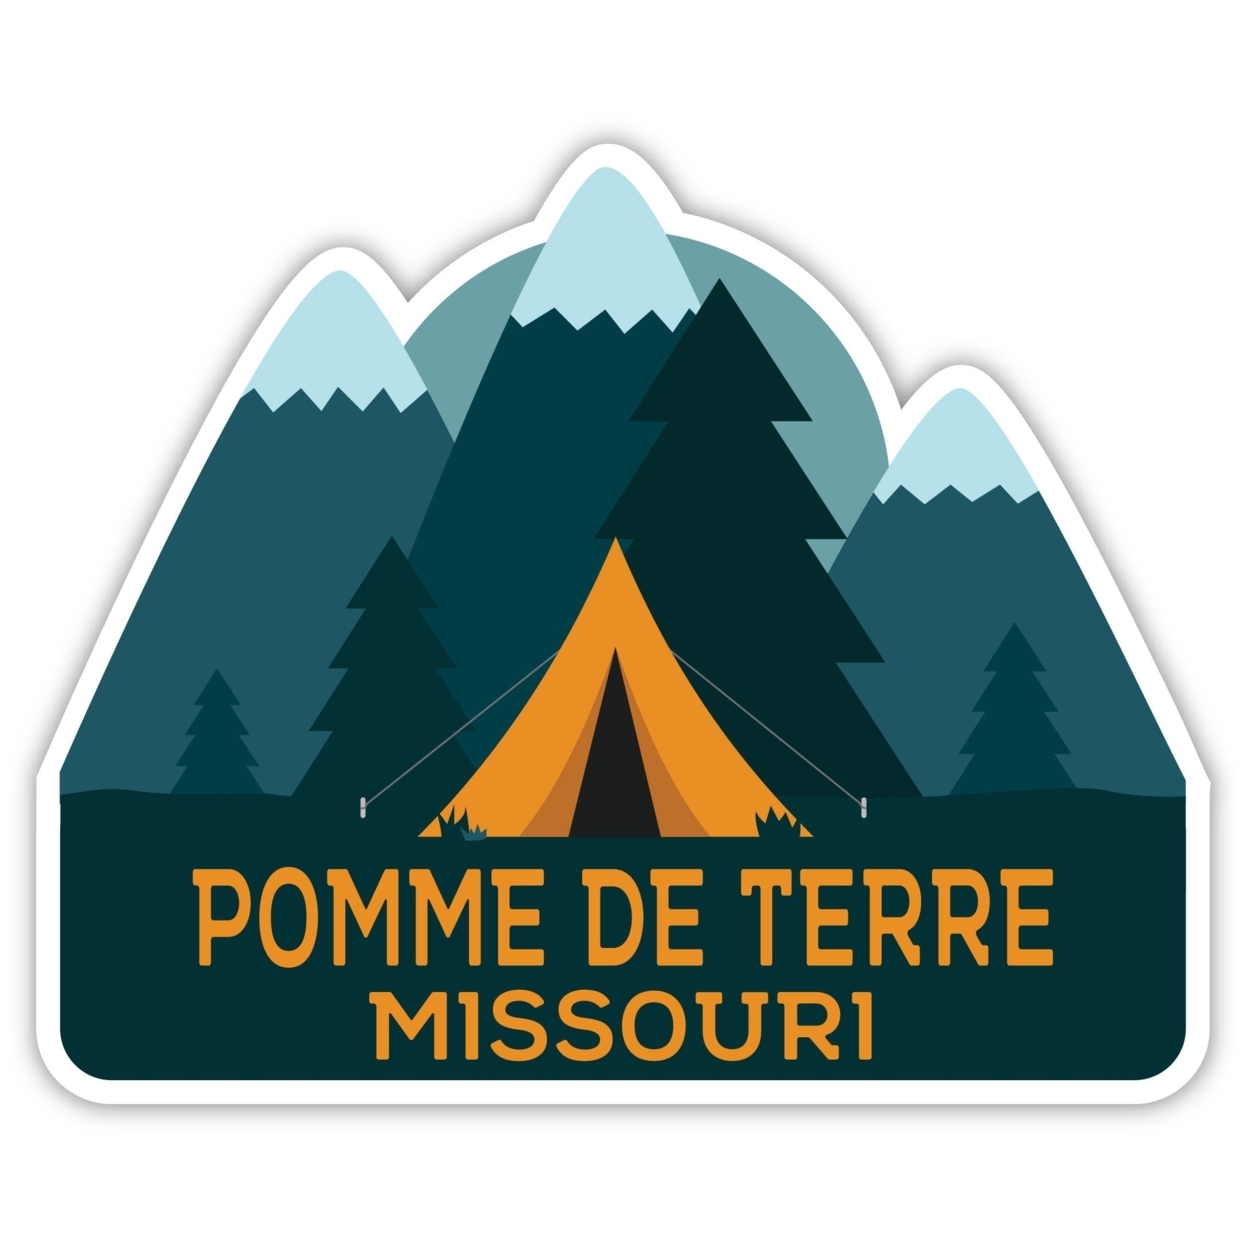 Pomme De Terre Missouri Souvenir Decorative Stickers (Choose Theme And Size) - Single Unit, 2-Inch, Tent